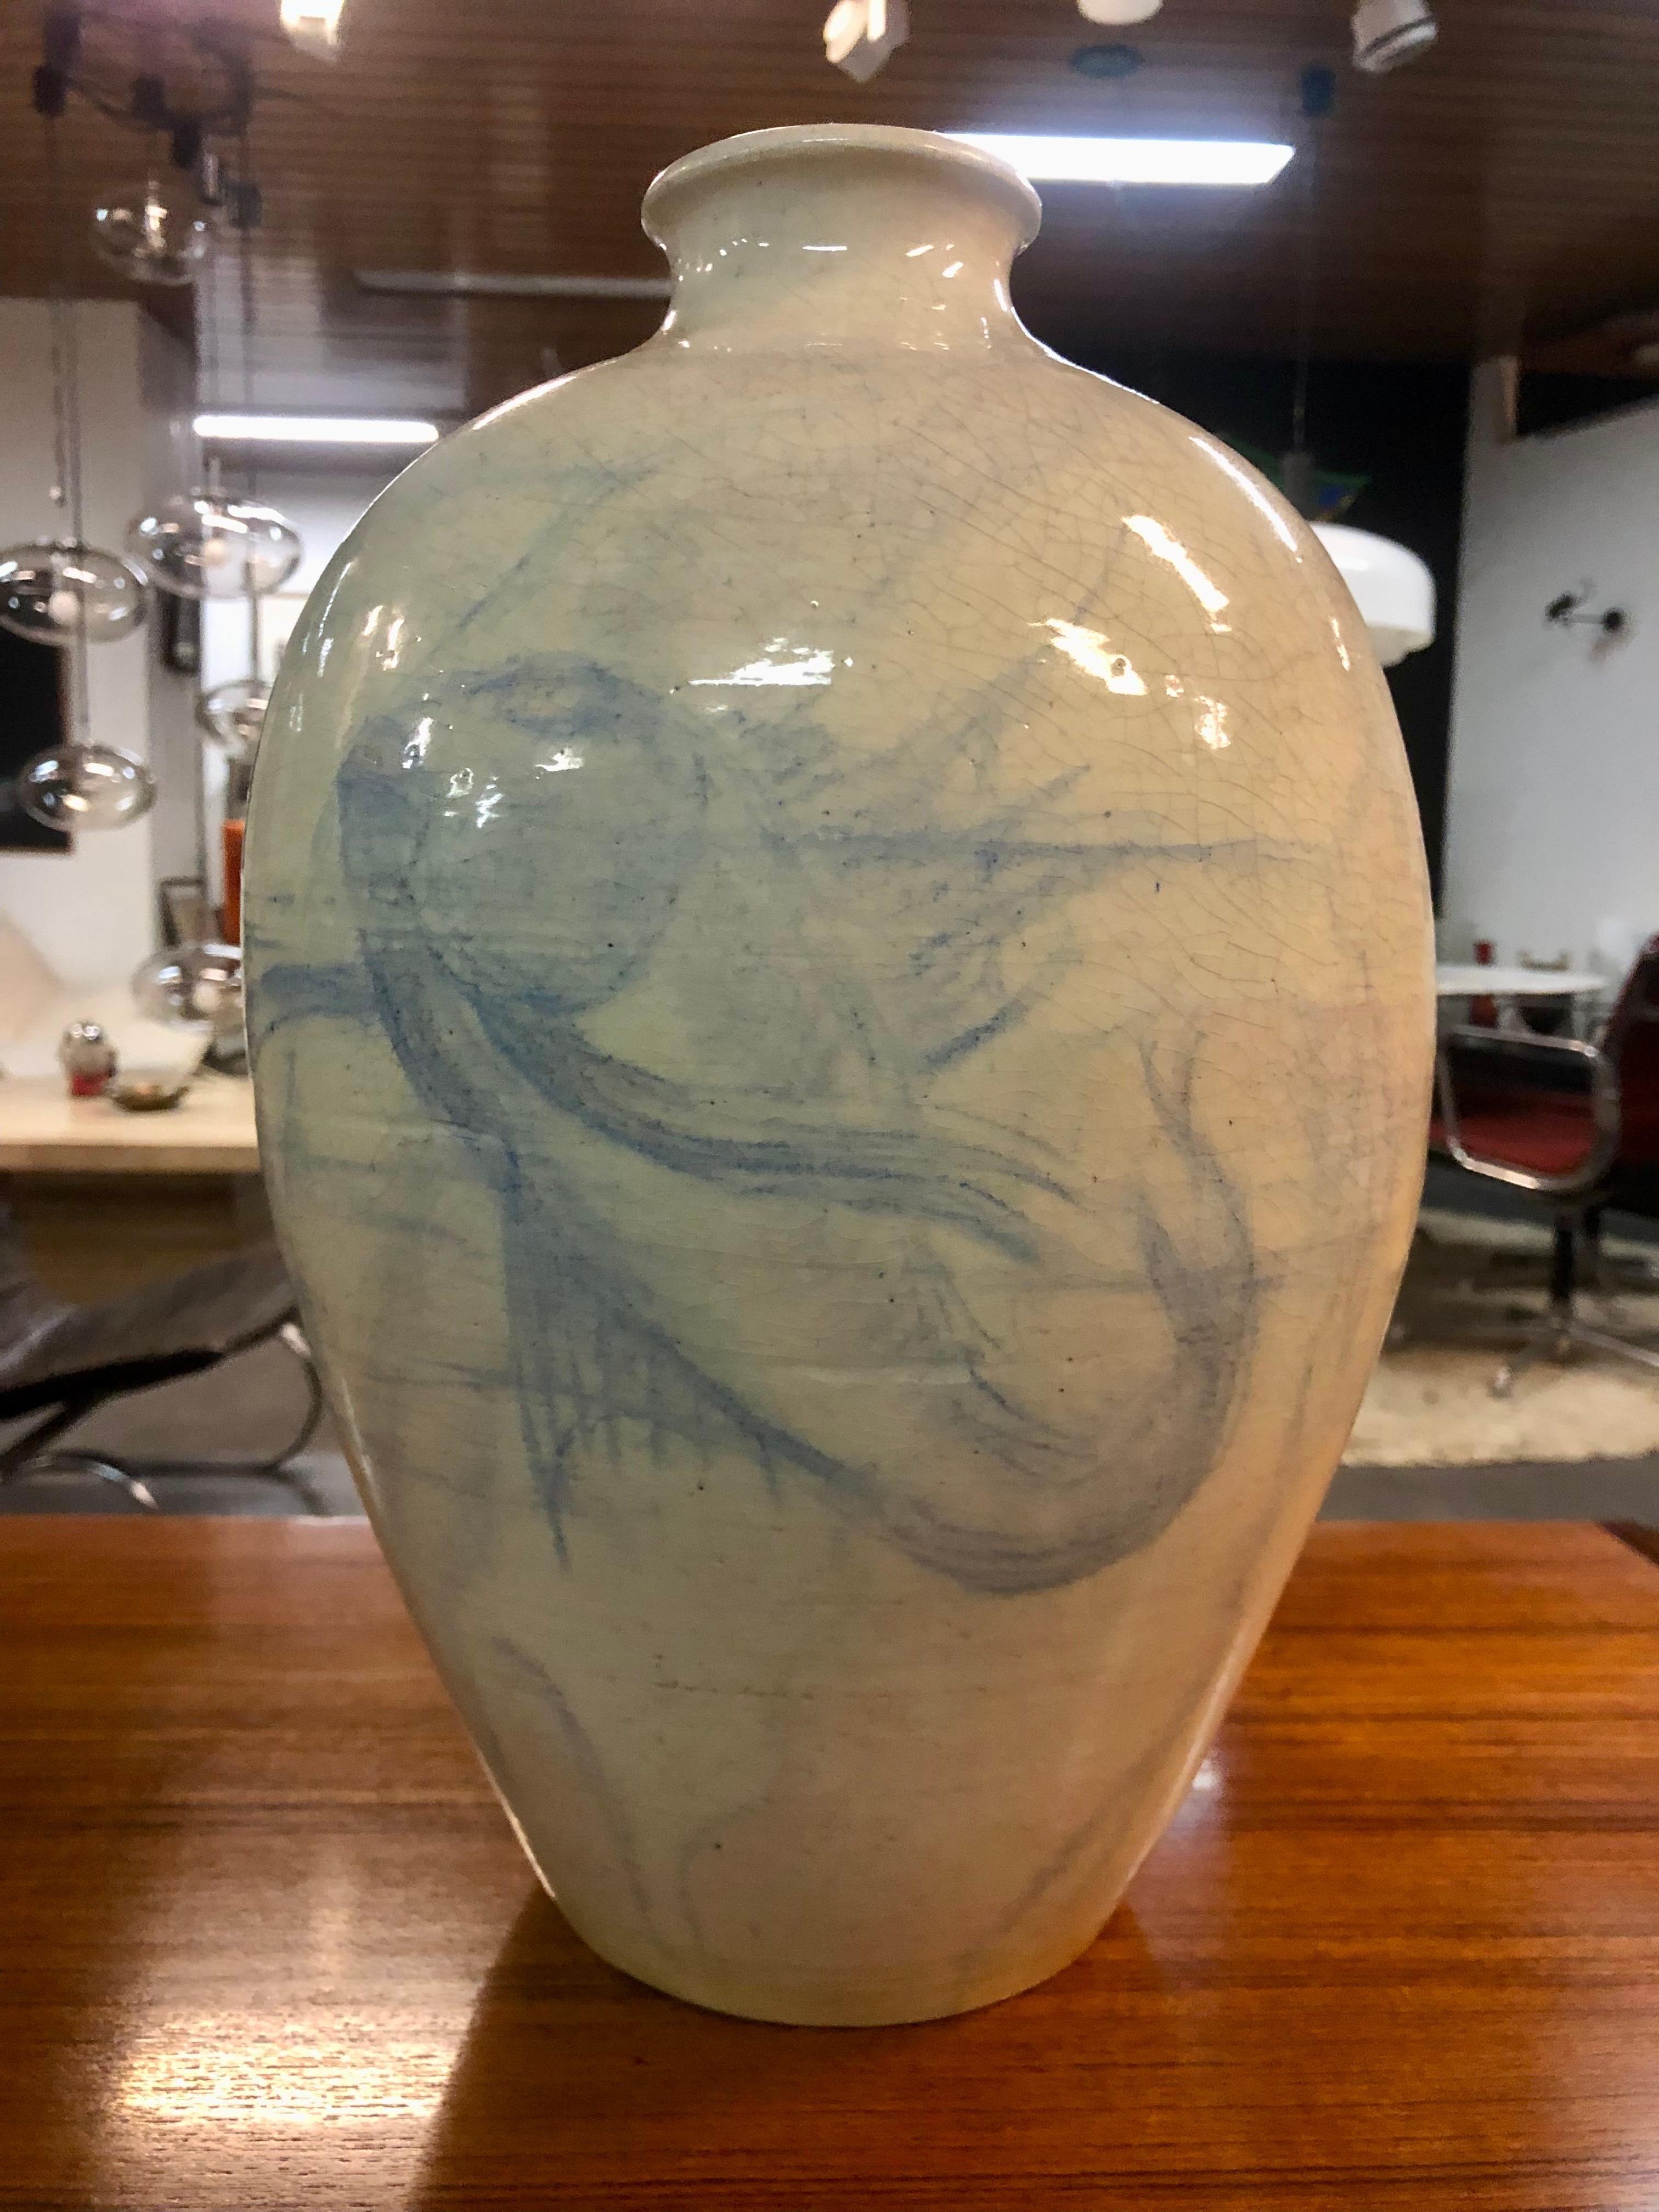 Ce vase exceptionnel en céramique, fruit de la collaboration des maîtres céramistes Edmond Lachenal et Félix Fevola, est un véritable témoignage de leurs prouesses artistiques. Fabriqué en céramique d'un blanc immaculé, ce vase présente un motif